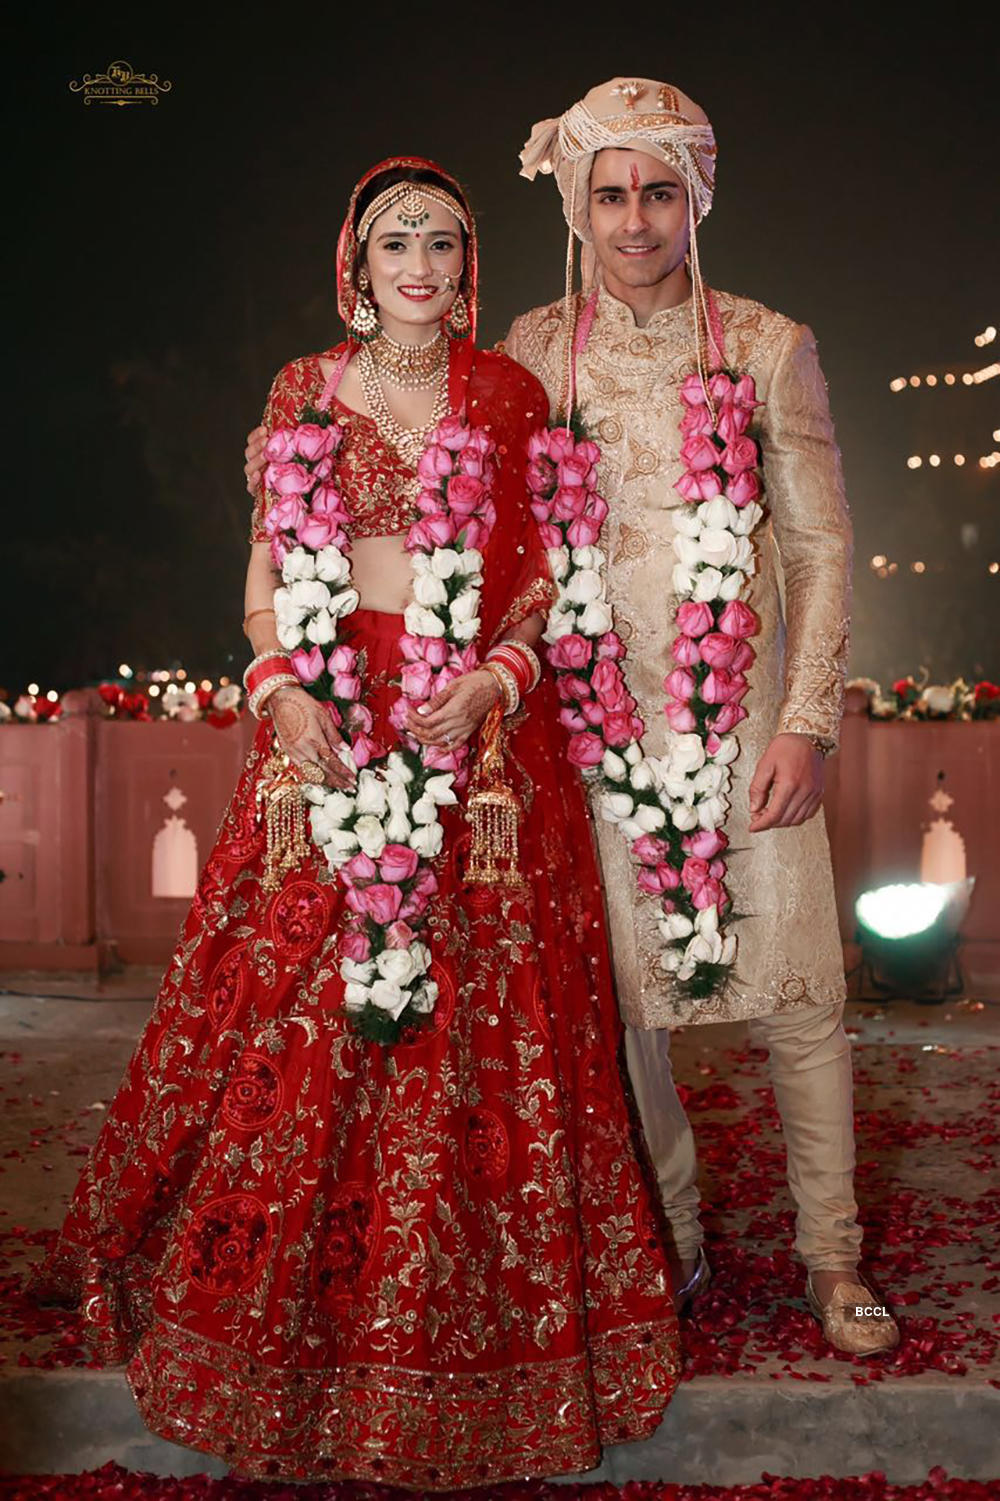 Photos of Gautam & Pankhuri's dreamy wedding